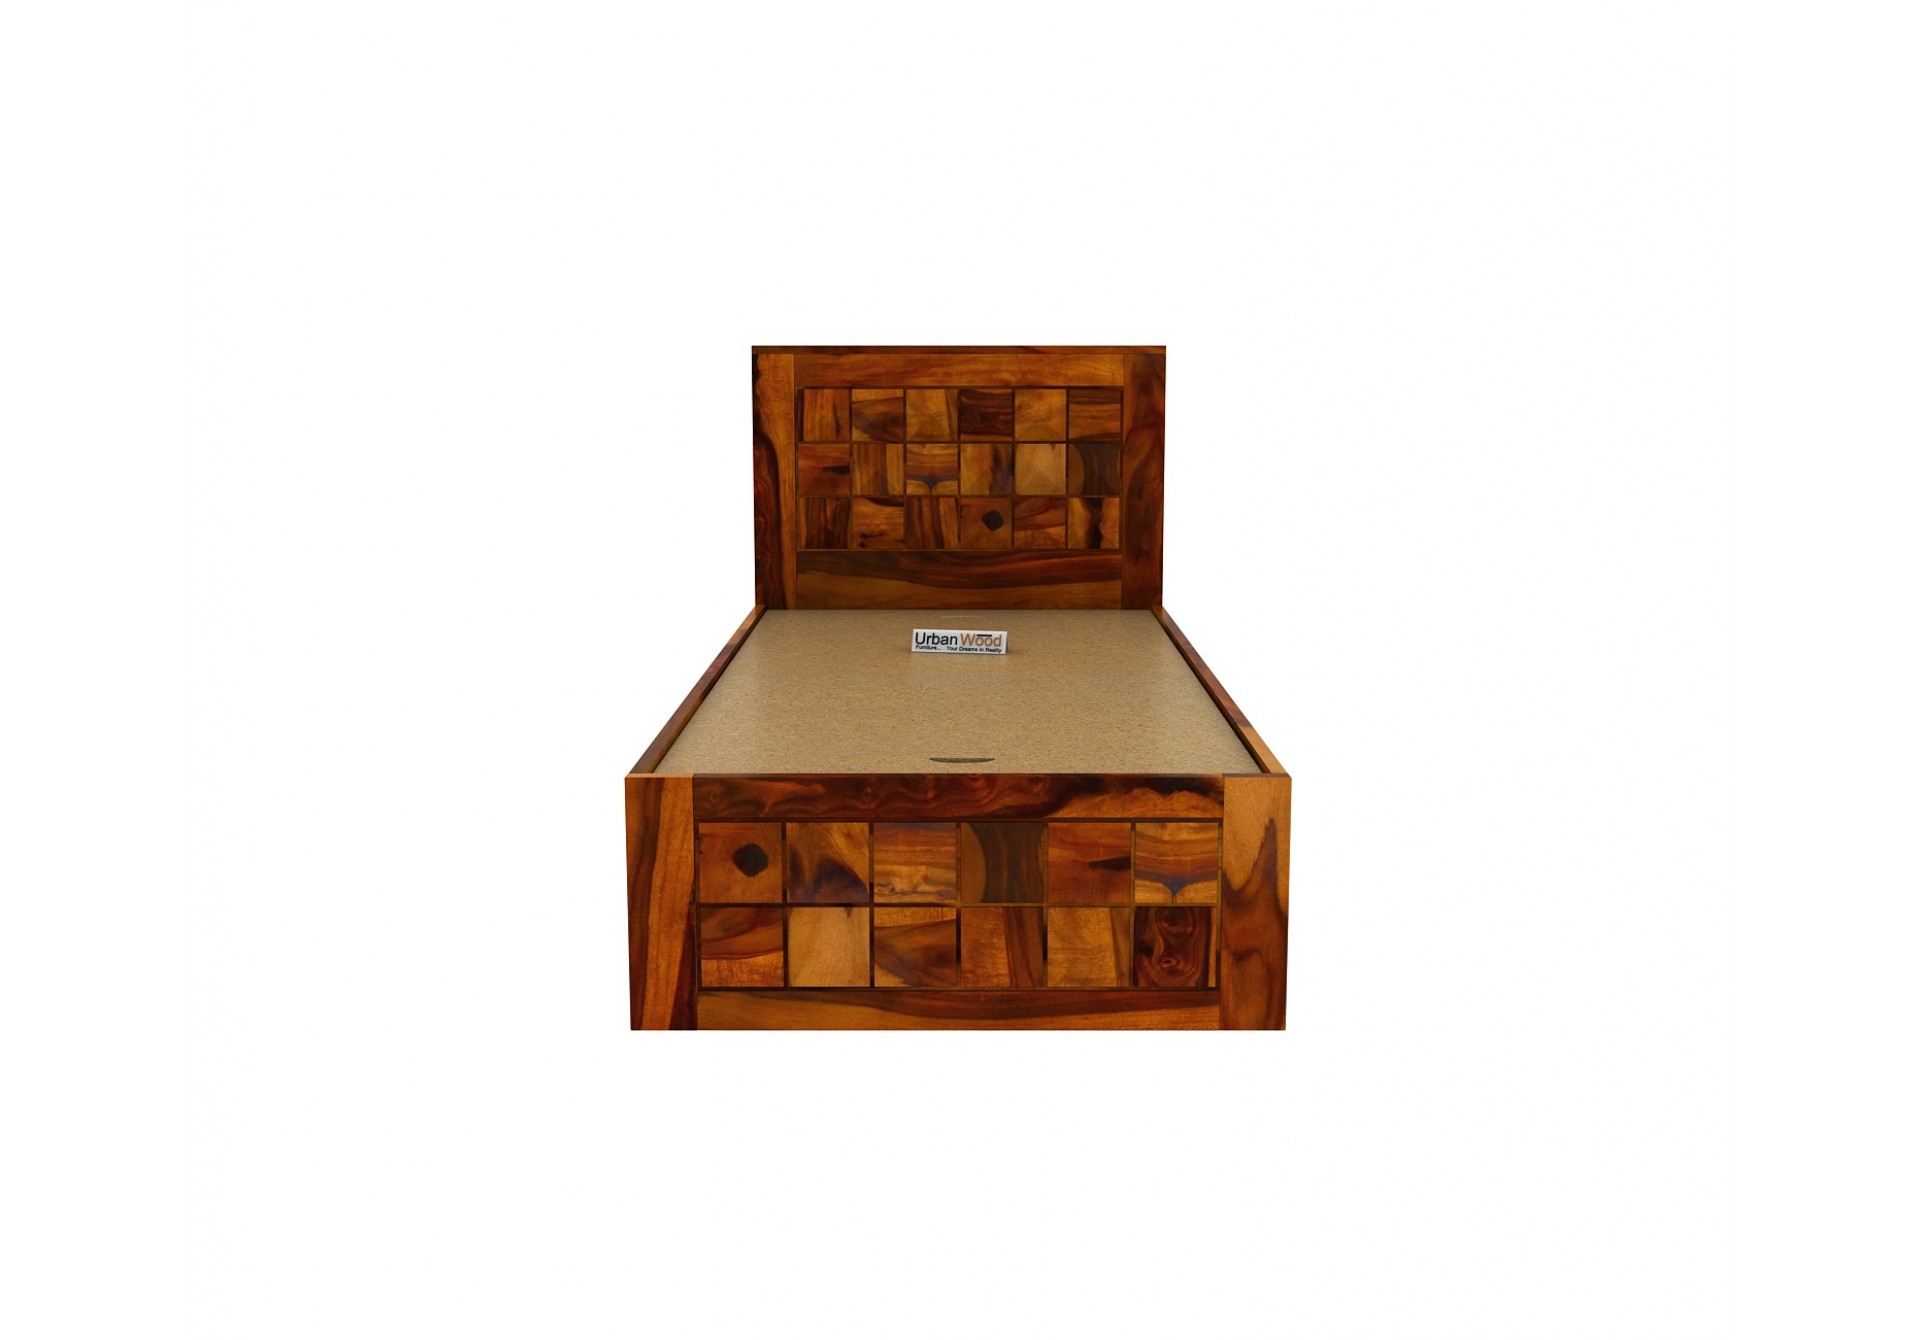 Morgana single bed without storage ( Honey Finish )